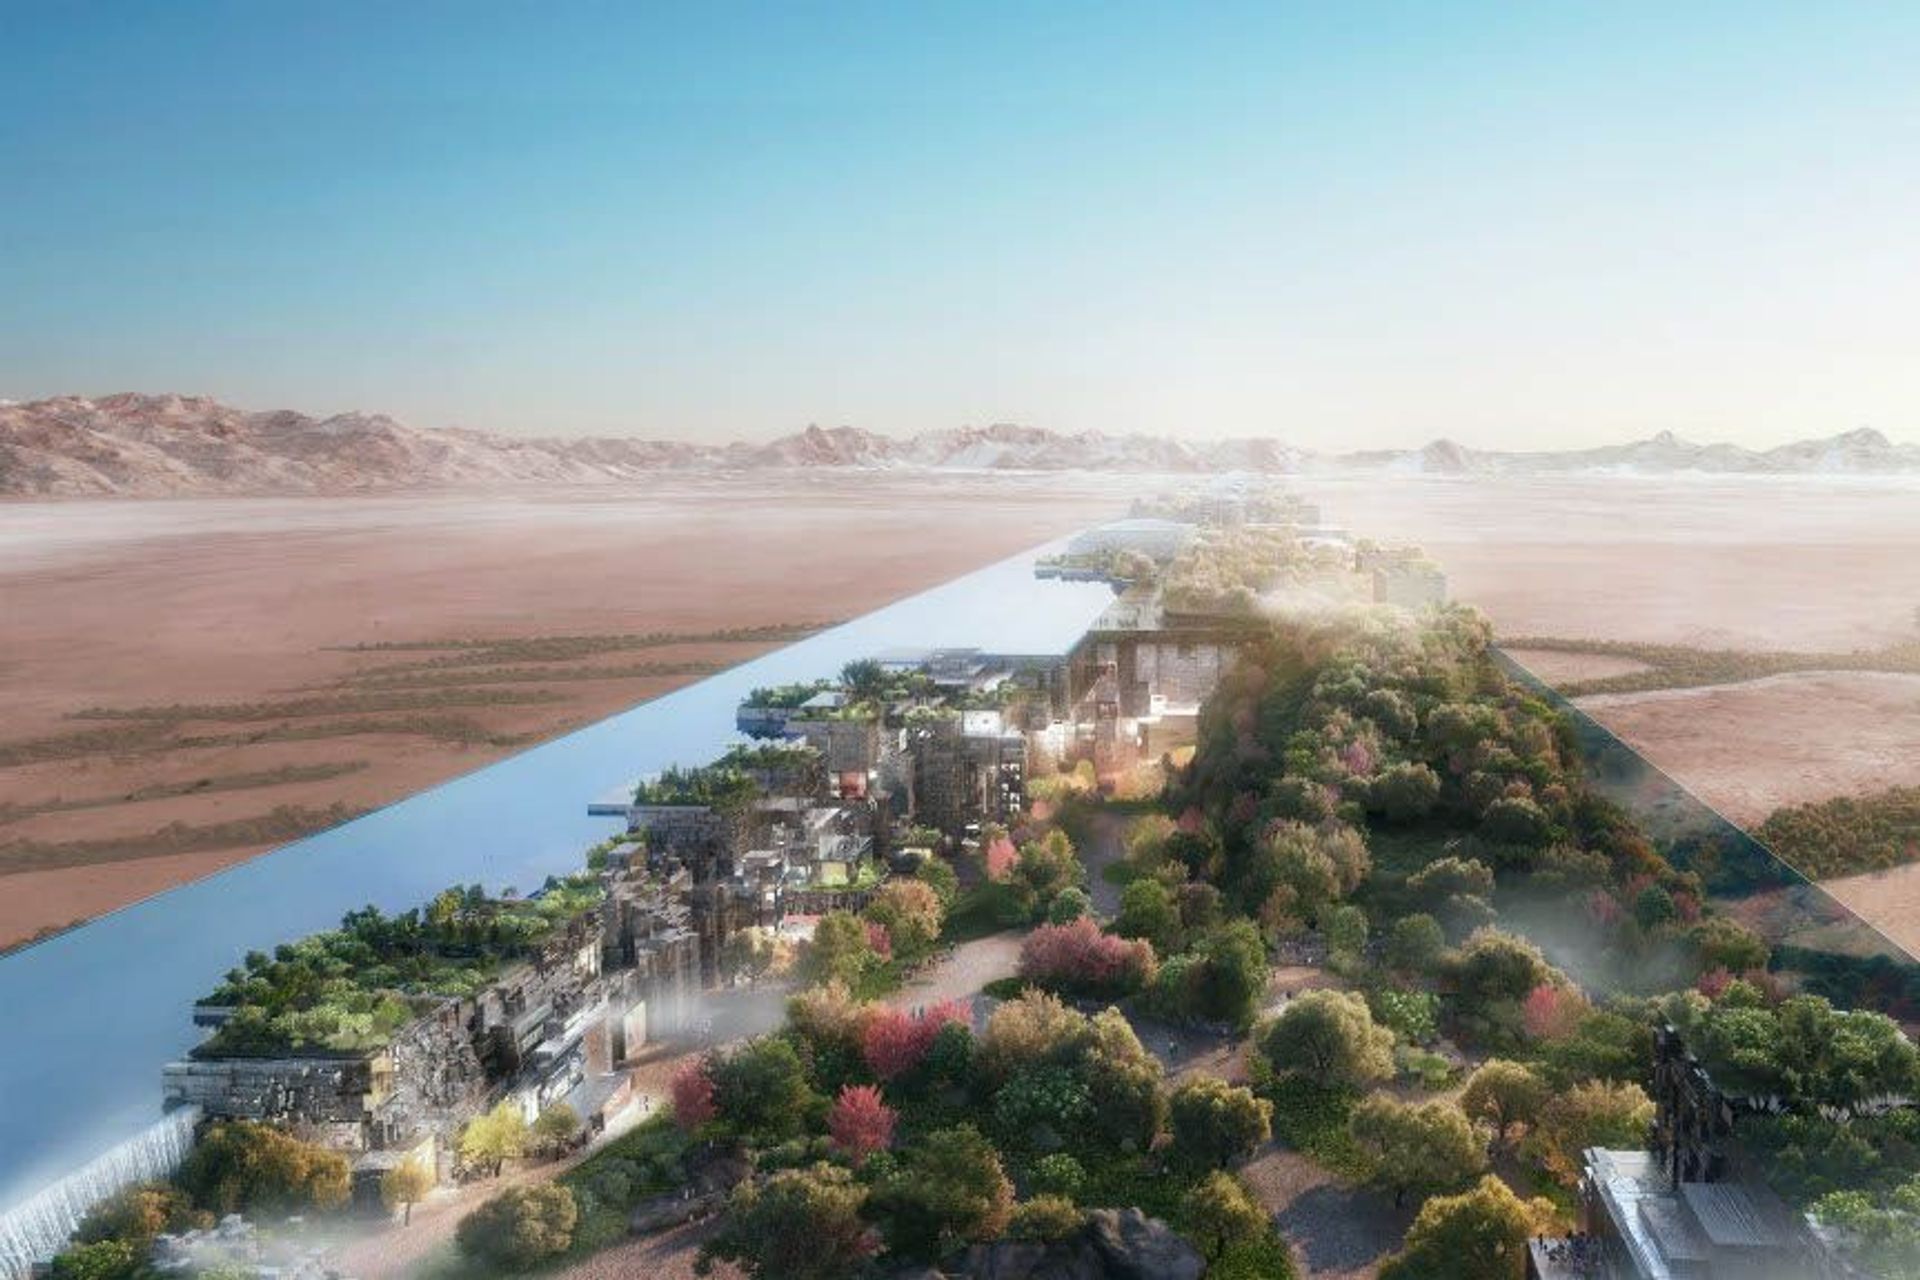 170 কিলোমিটার দীর্ঘ, সৌদি আরবের "দ্য লাইন" হবে বিশ্বের প্রথম লিনিয়ার শহর